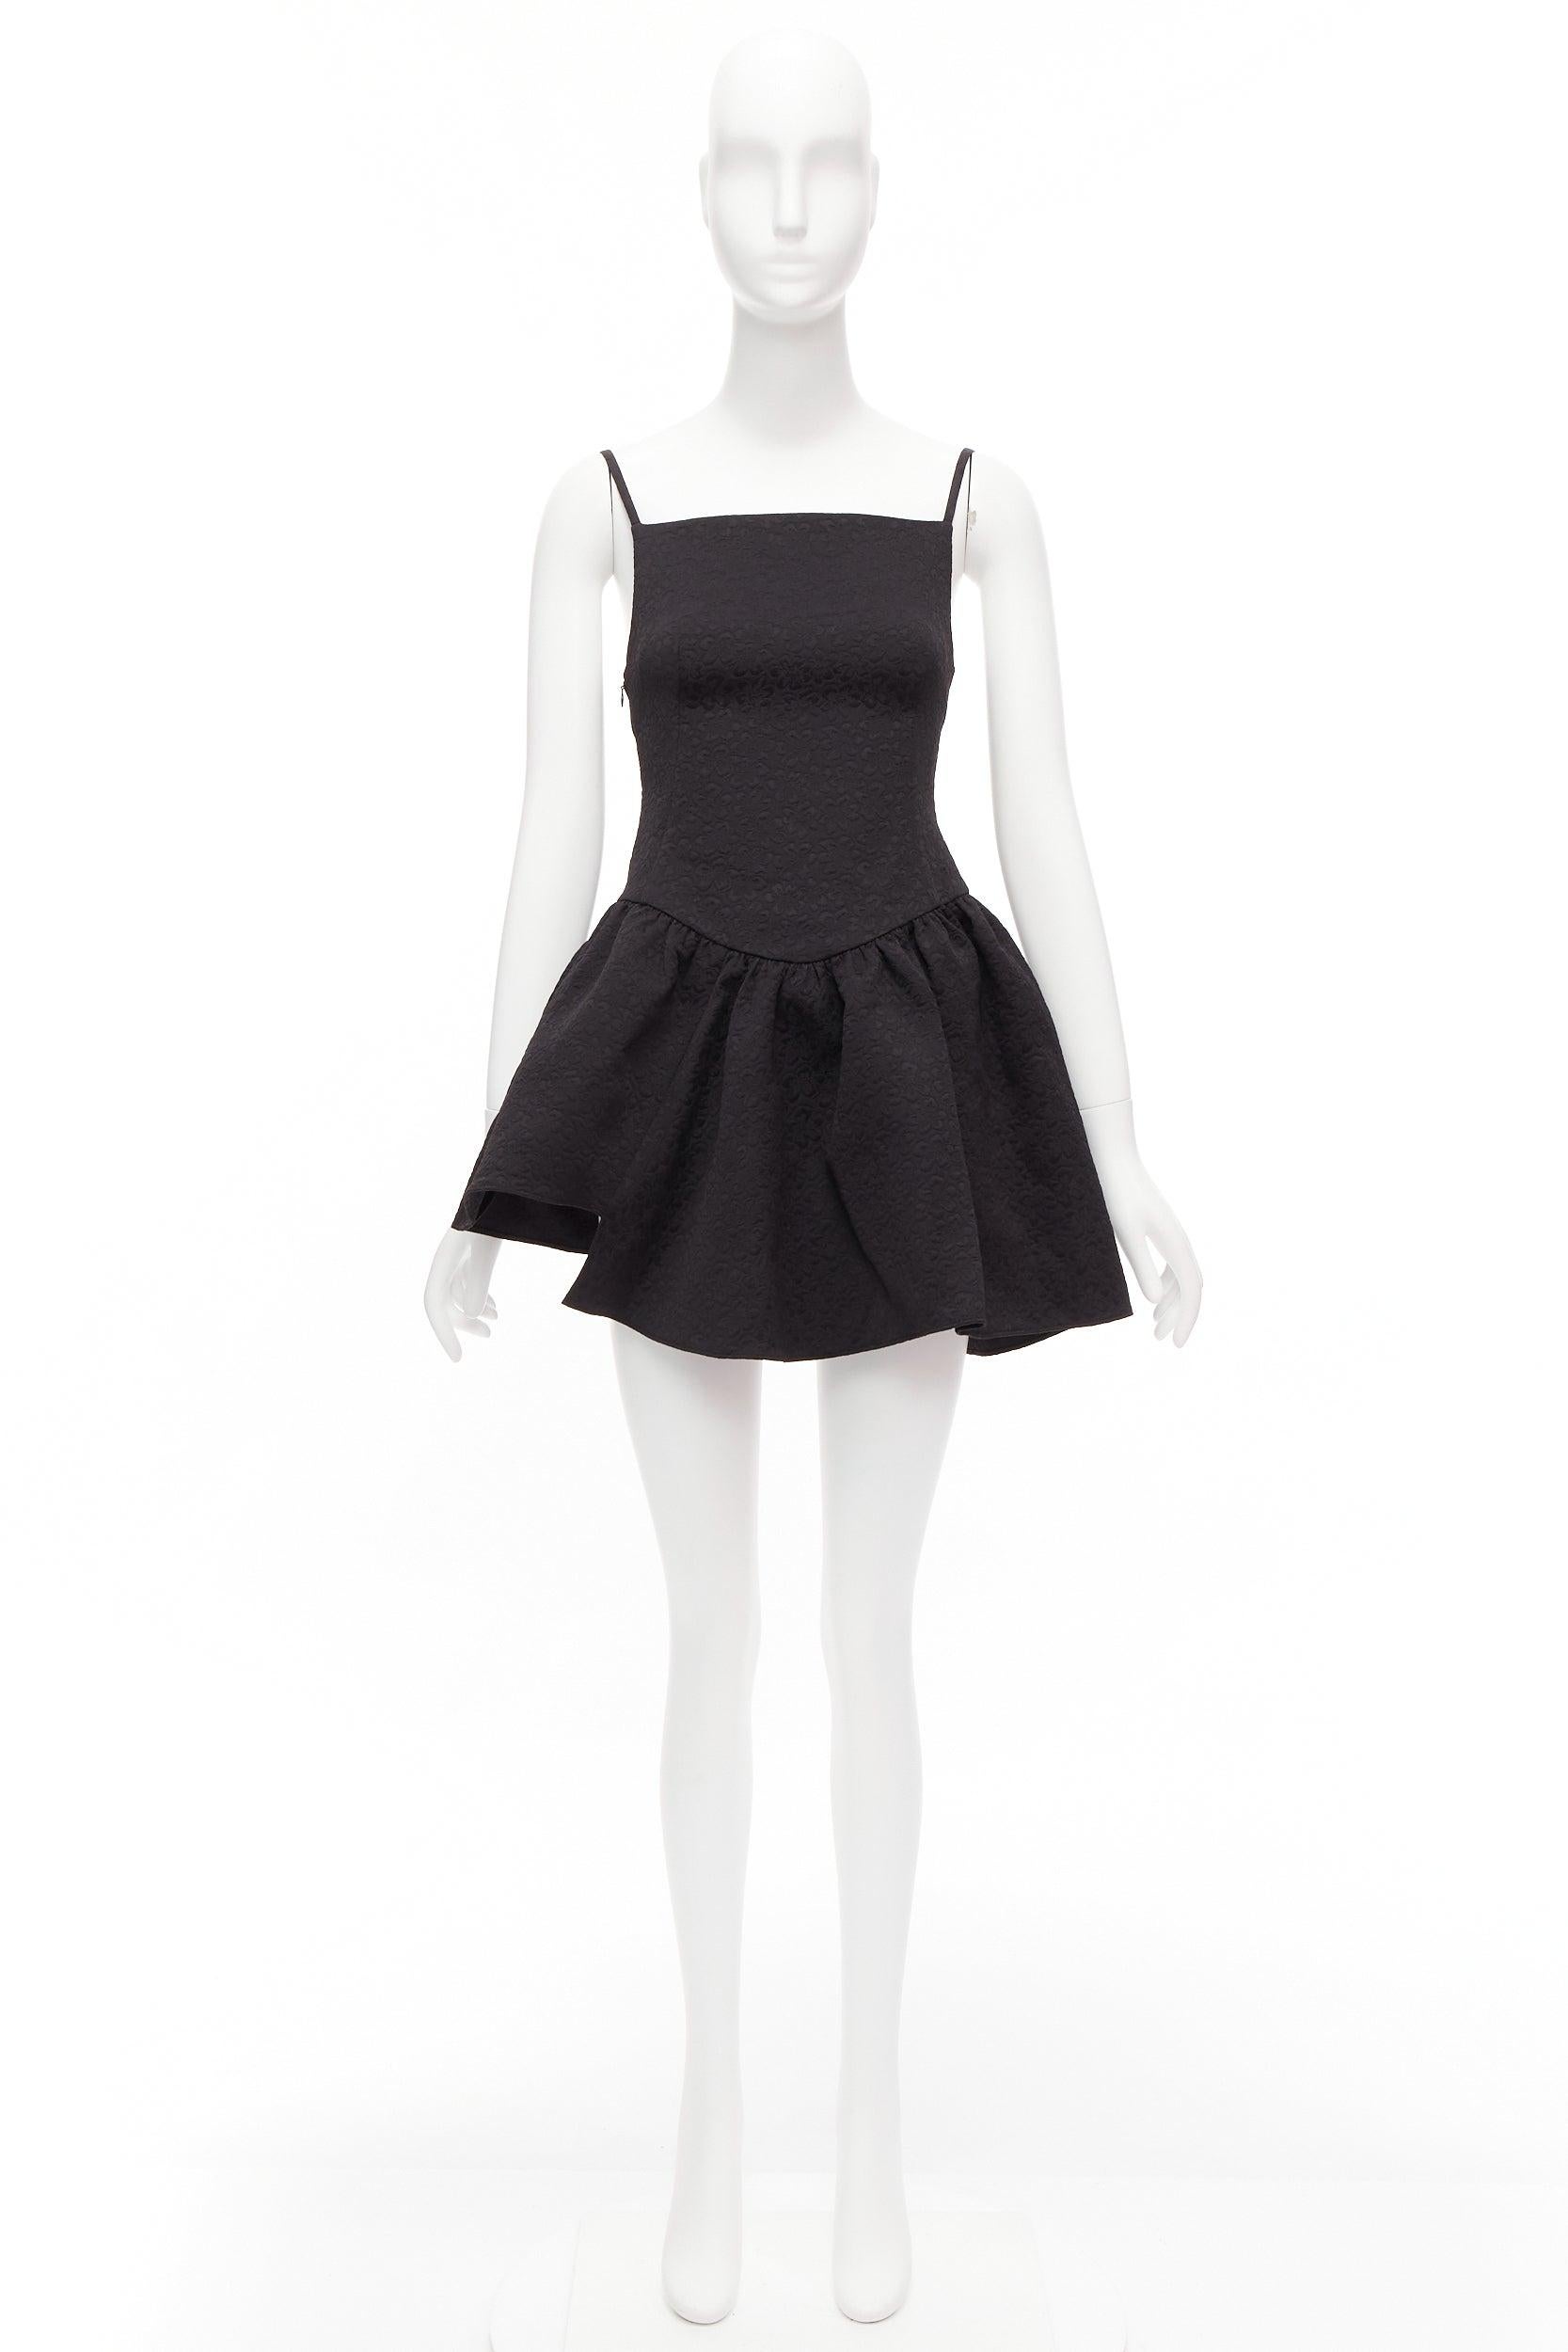 SHUSHU TONG black floral cloque spaghetti strap flounce skirt mini dress UK6 XS For Sale 5